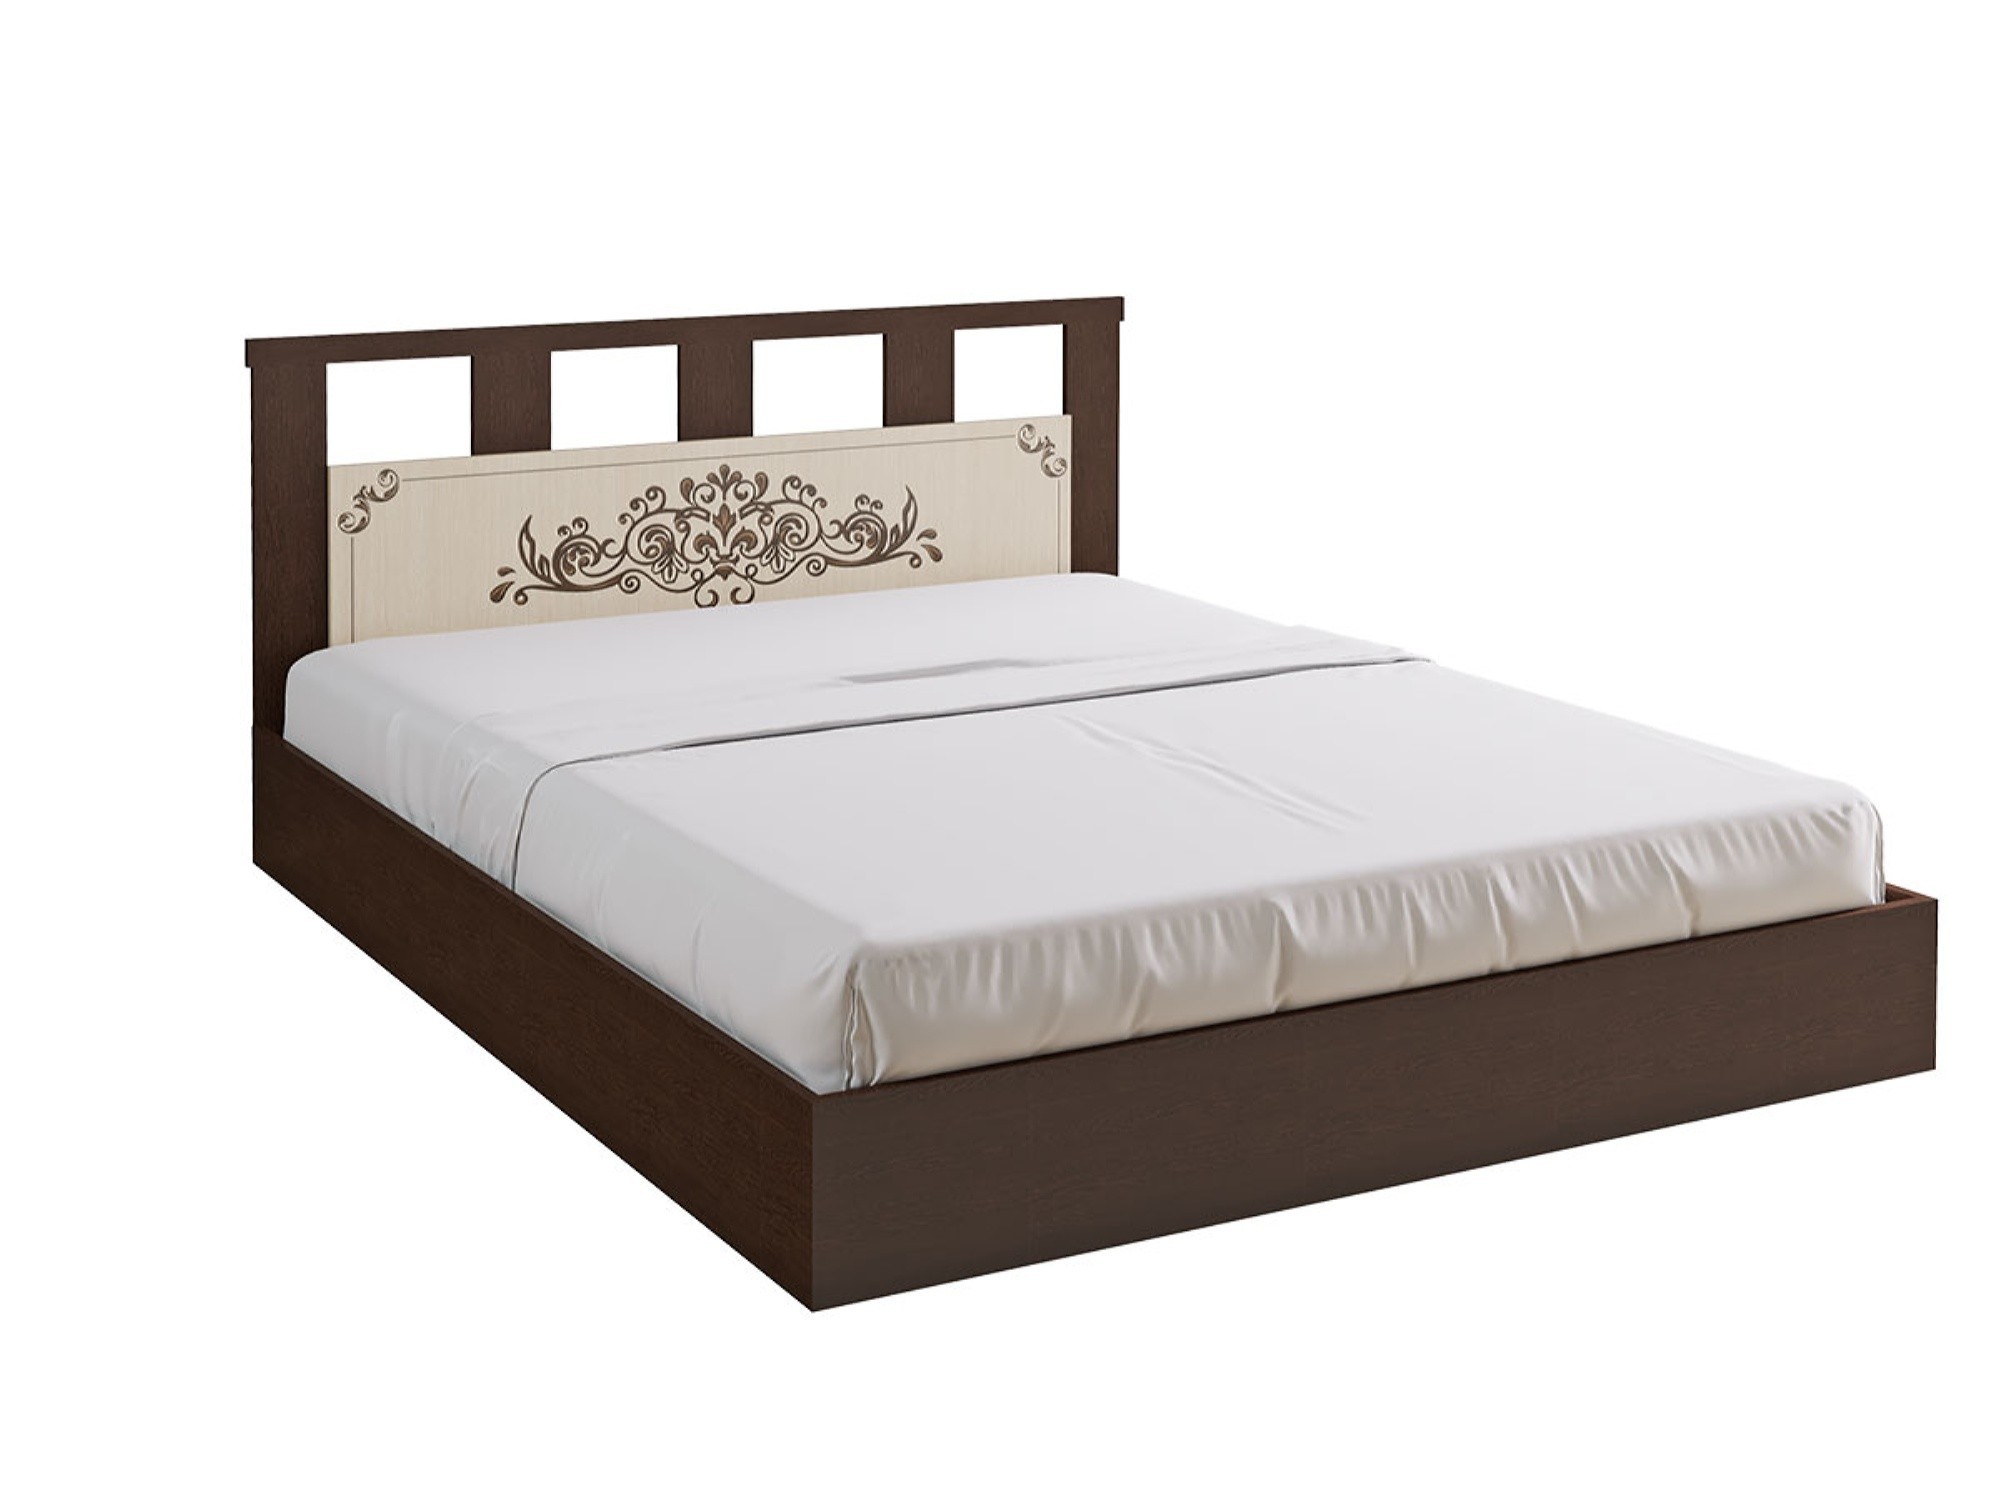 Жасмин Кровать 160 (Венге / дуб беленый) Коричневый темный, Бежевый, ЛДСП сакура кровать с ящиками 160 венге дуб беленый коричневый темный бежевый лдсп